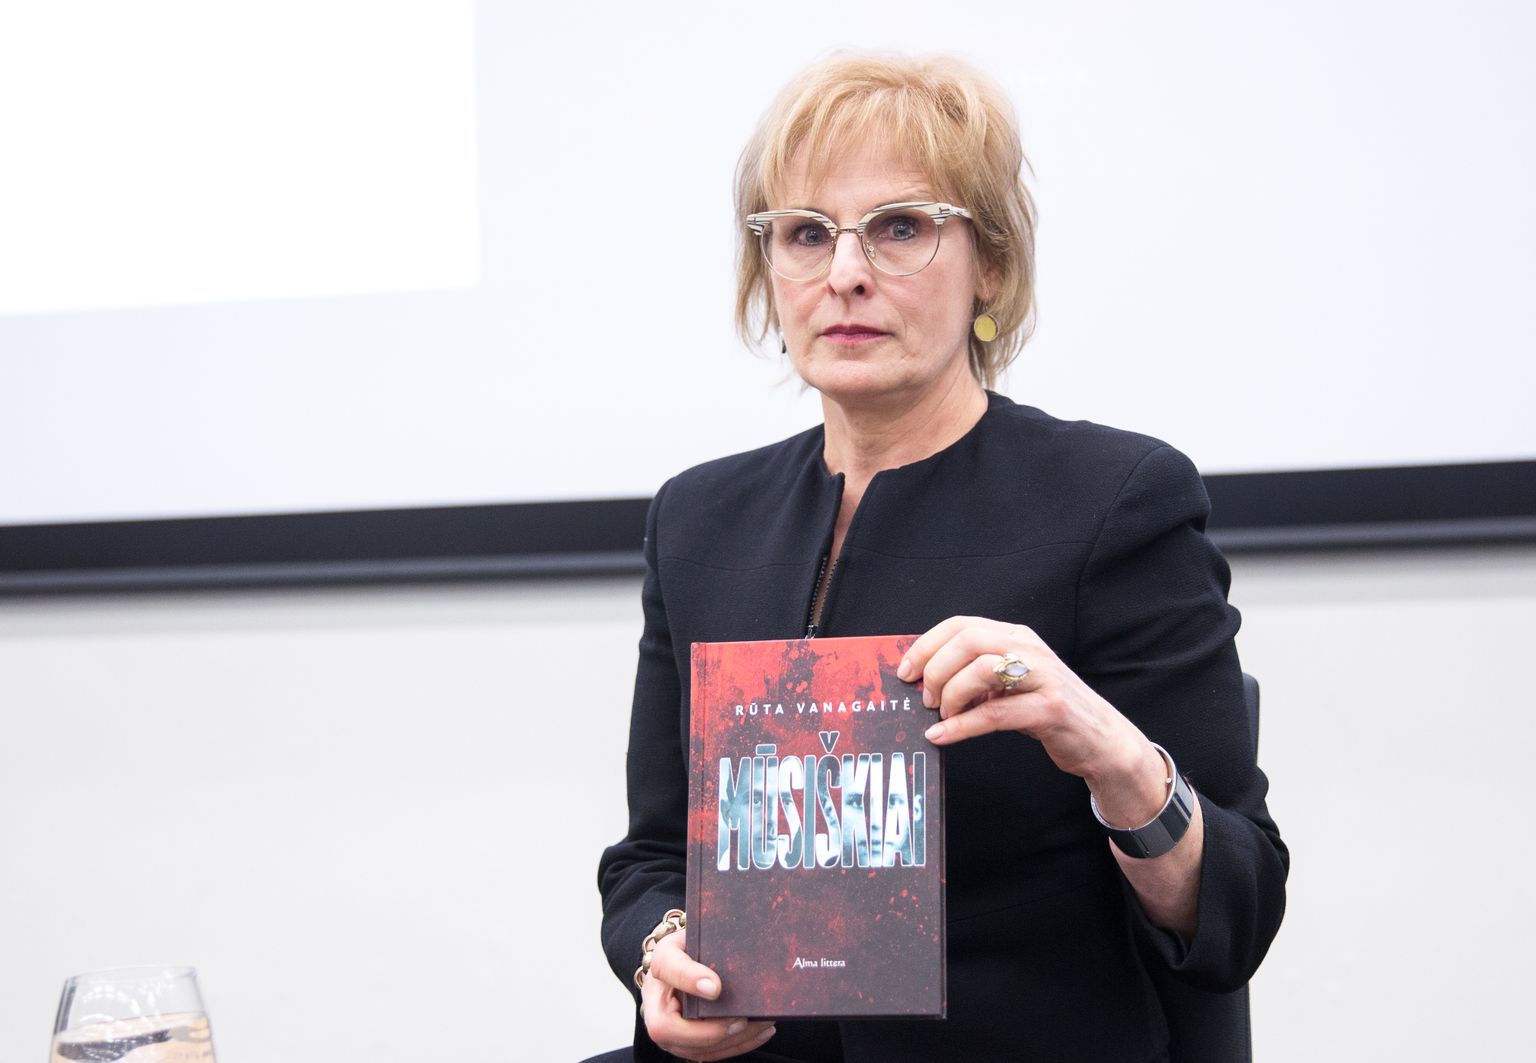 Rūta Vanagaitė esitlemas oma raamatut «Meie», mis põhjustas Leedu avaliku pahameeletormi ja korjati müügilettidelt.